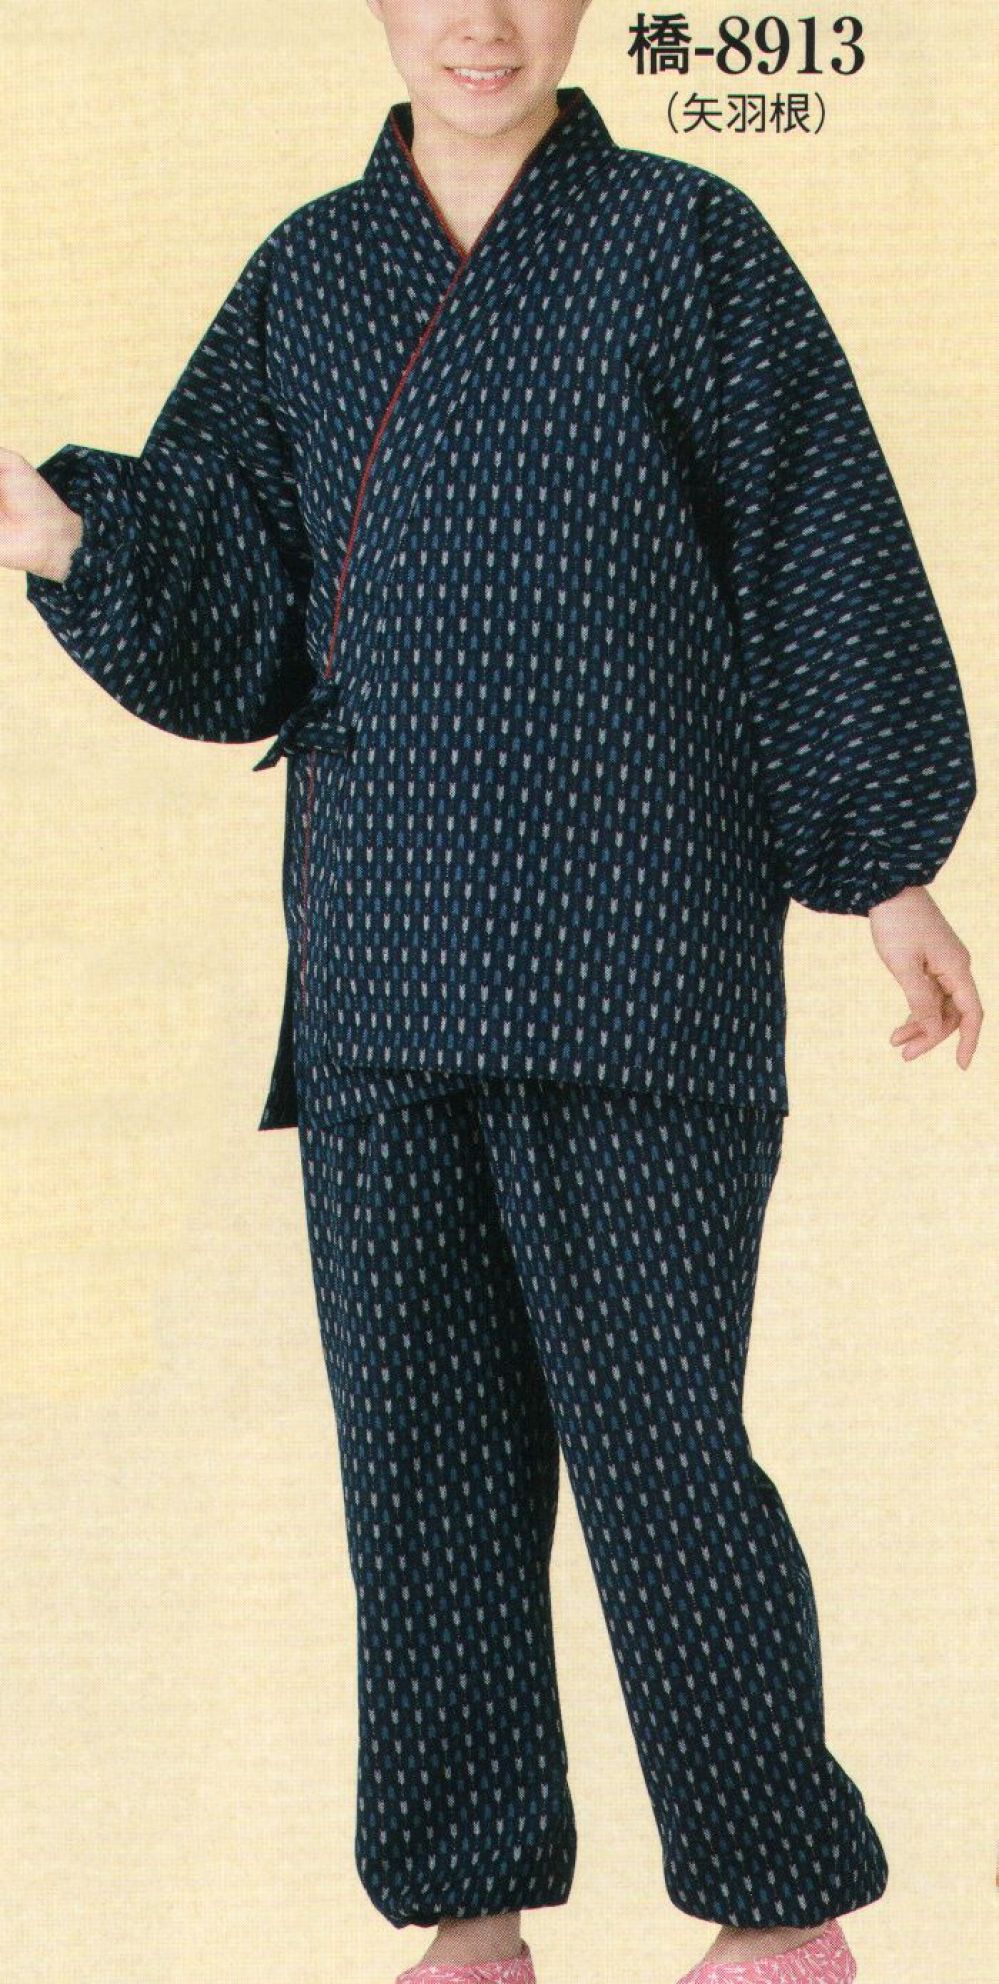 サービスユニフォームCOM 婦人用 久留米織作務衣 橋印 日本の歳時記